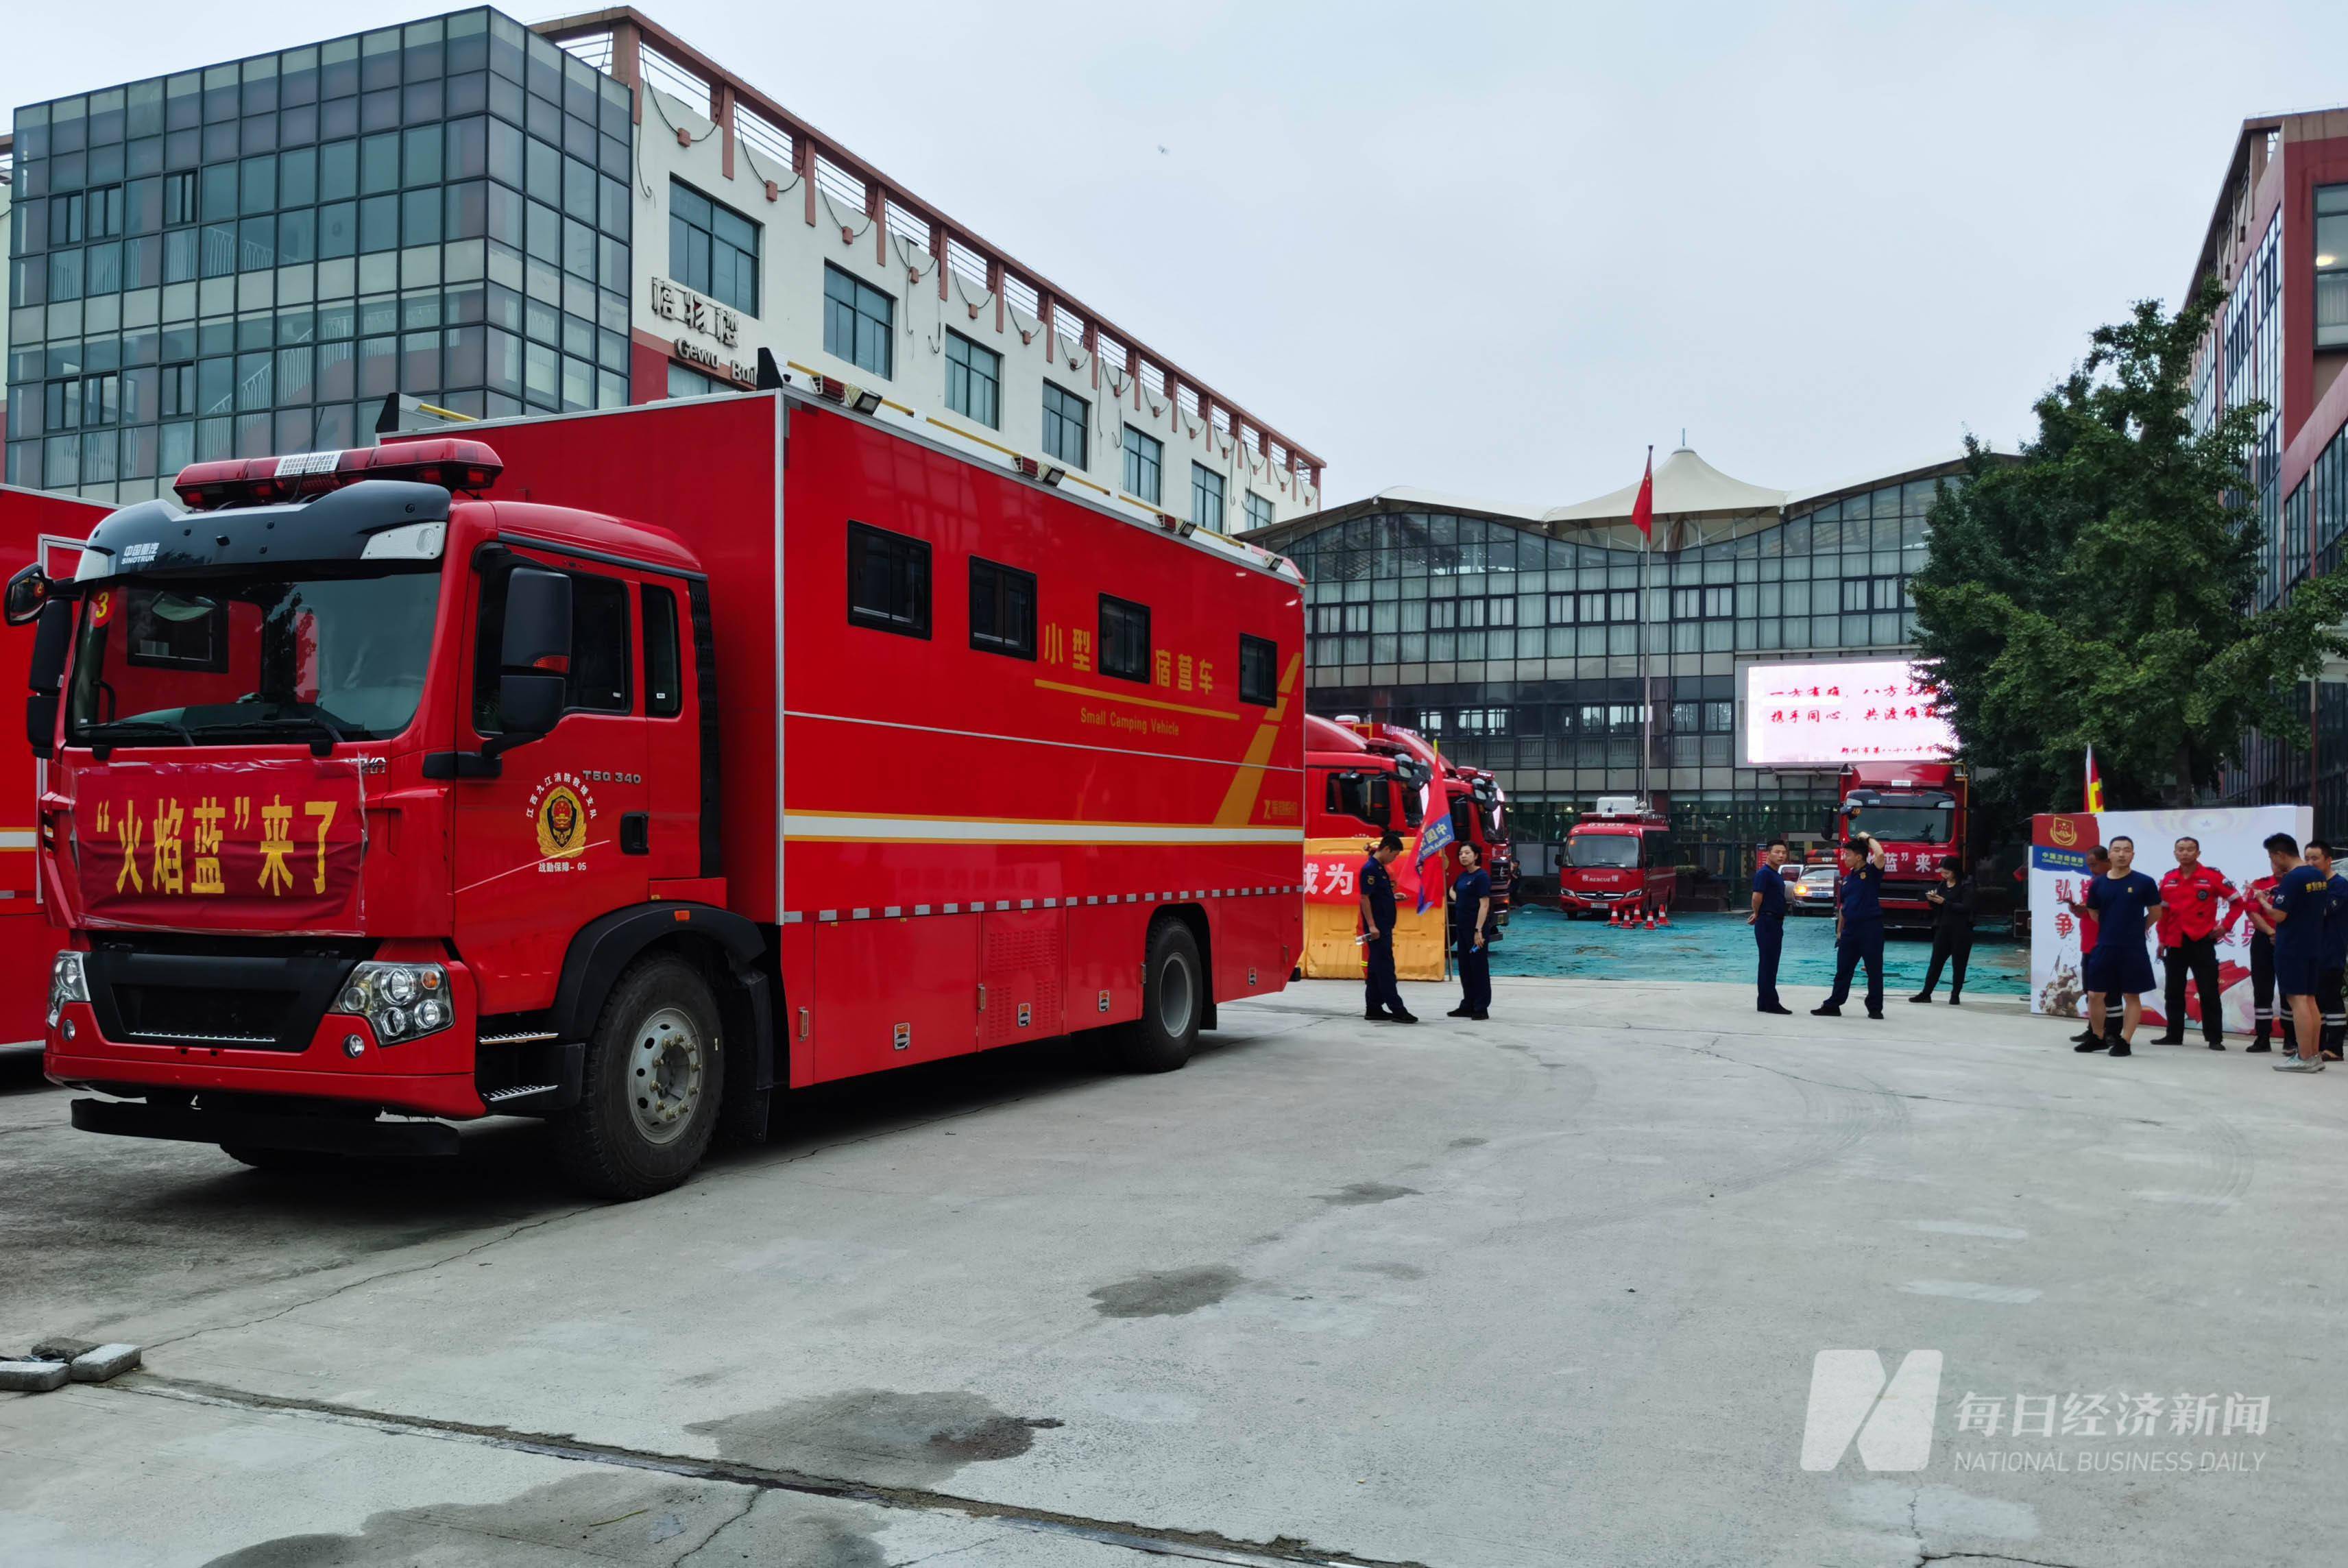 图集丨援郑消防队在中学成立了指挥部,捐赠物资抵达医院